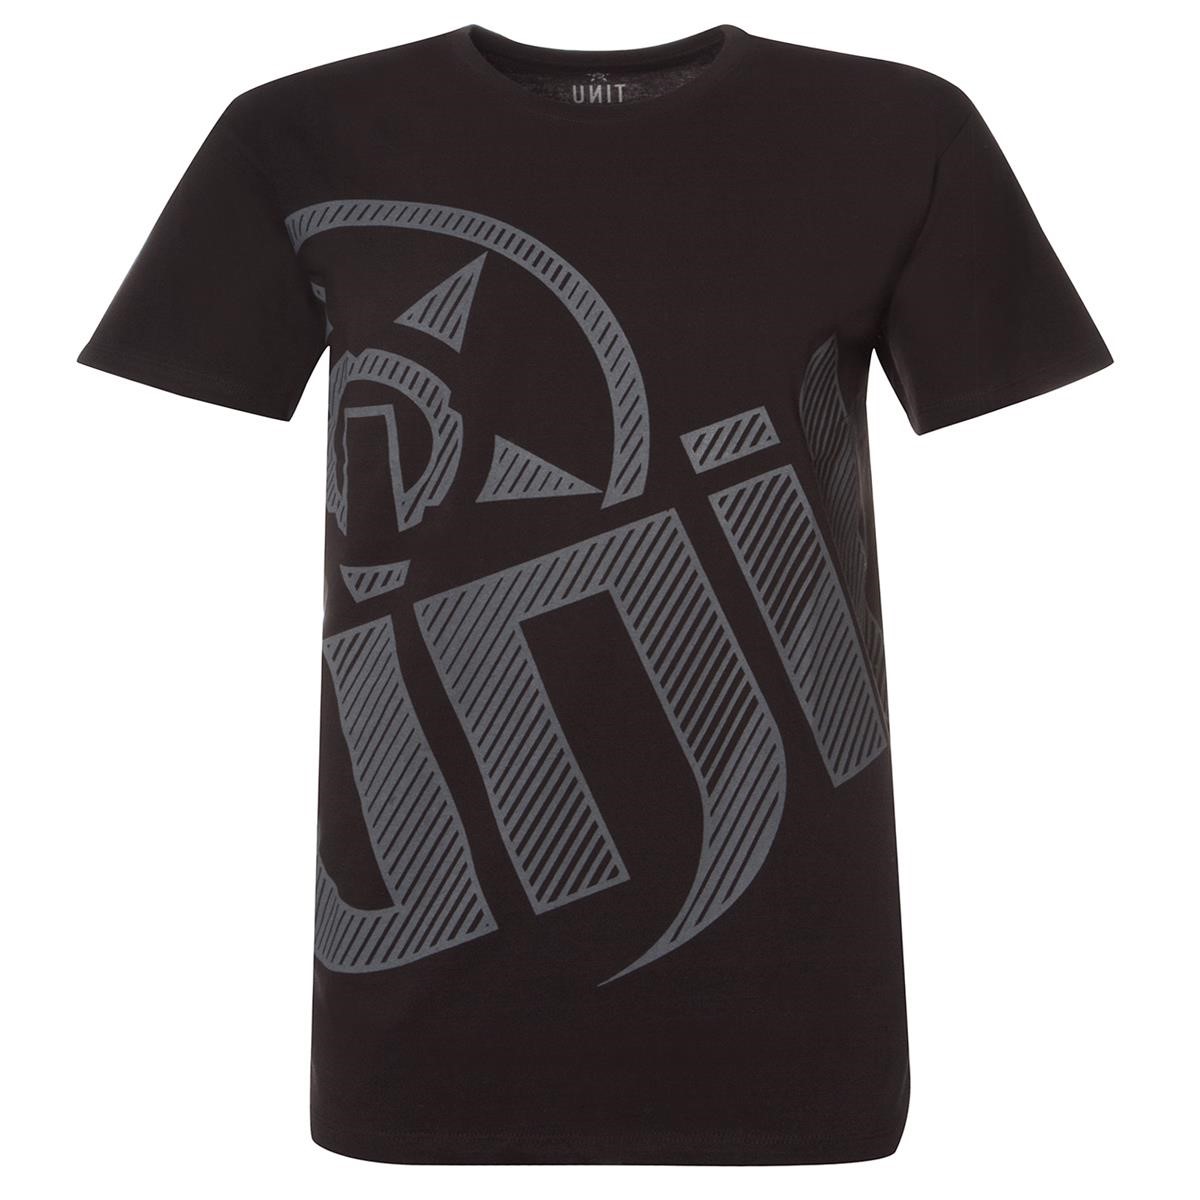 Unit T-Shirt Laced Black